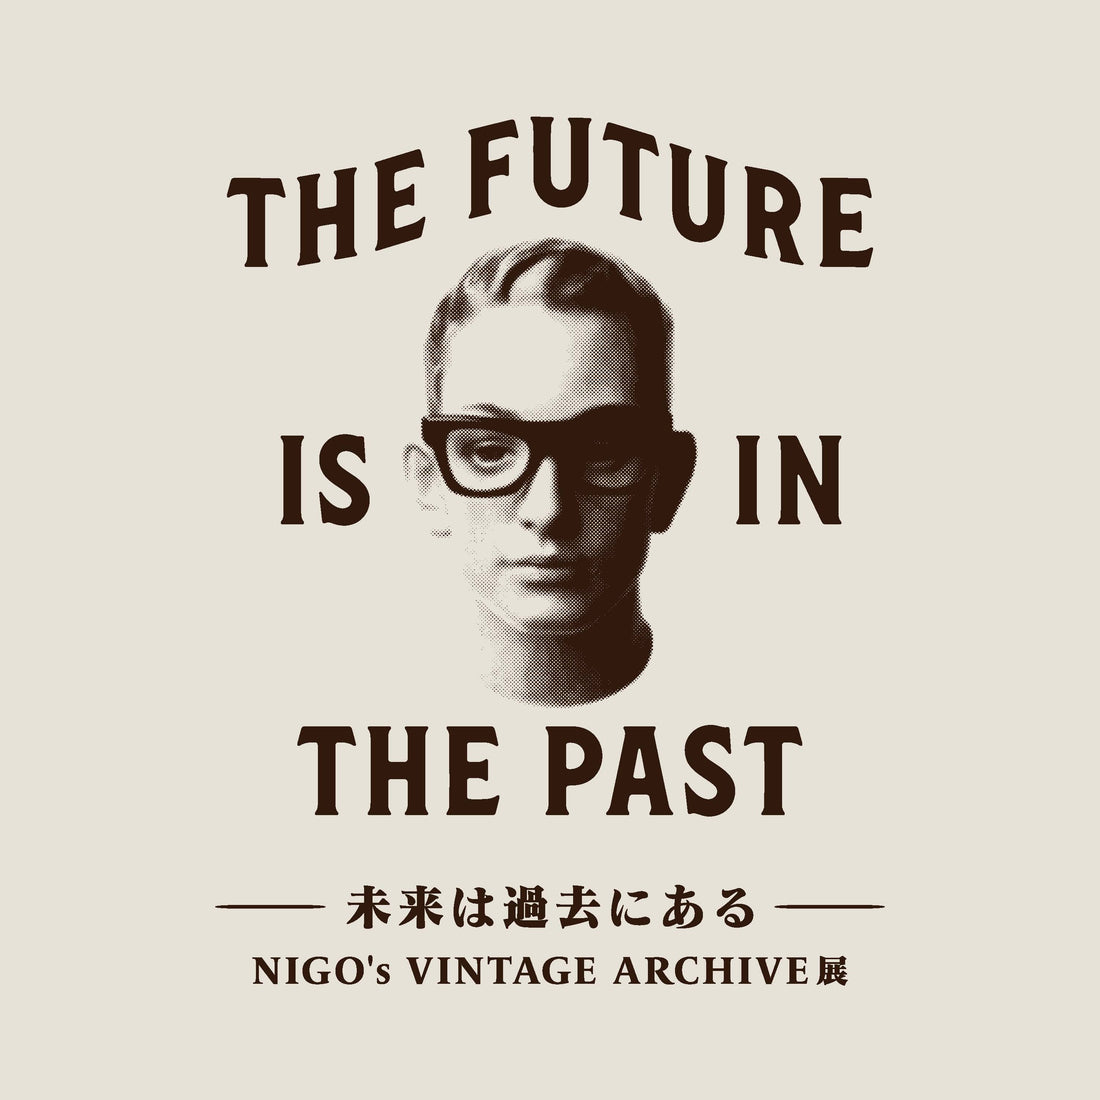 未来は過去にある ”THE FUTURE IS IN THE PAST” - NIGO’s VINTAGE ARCHIVE 展 - 開催決定のお知らせ